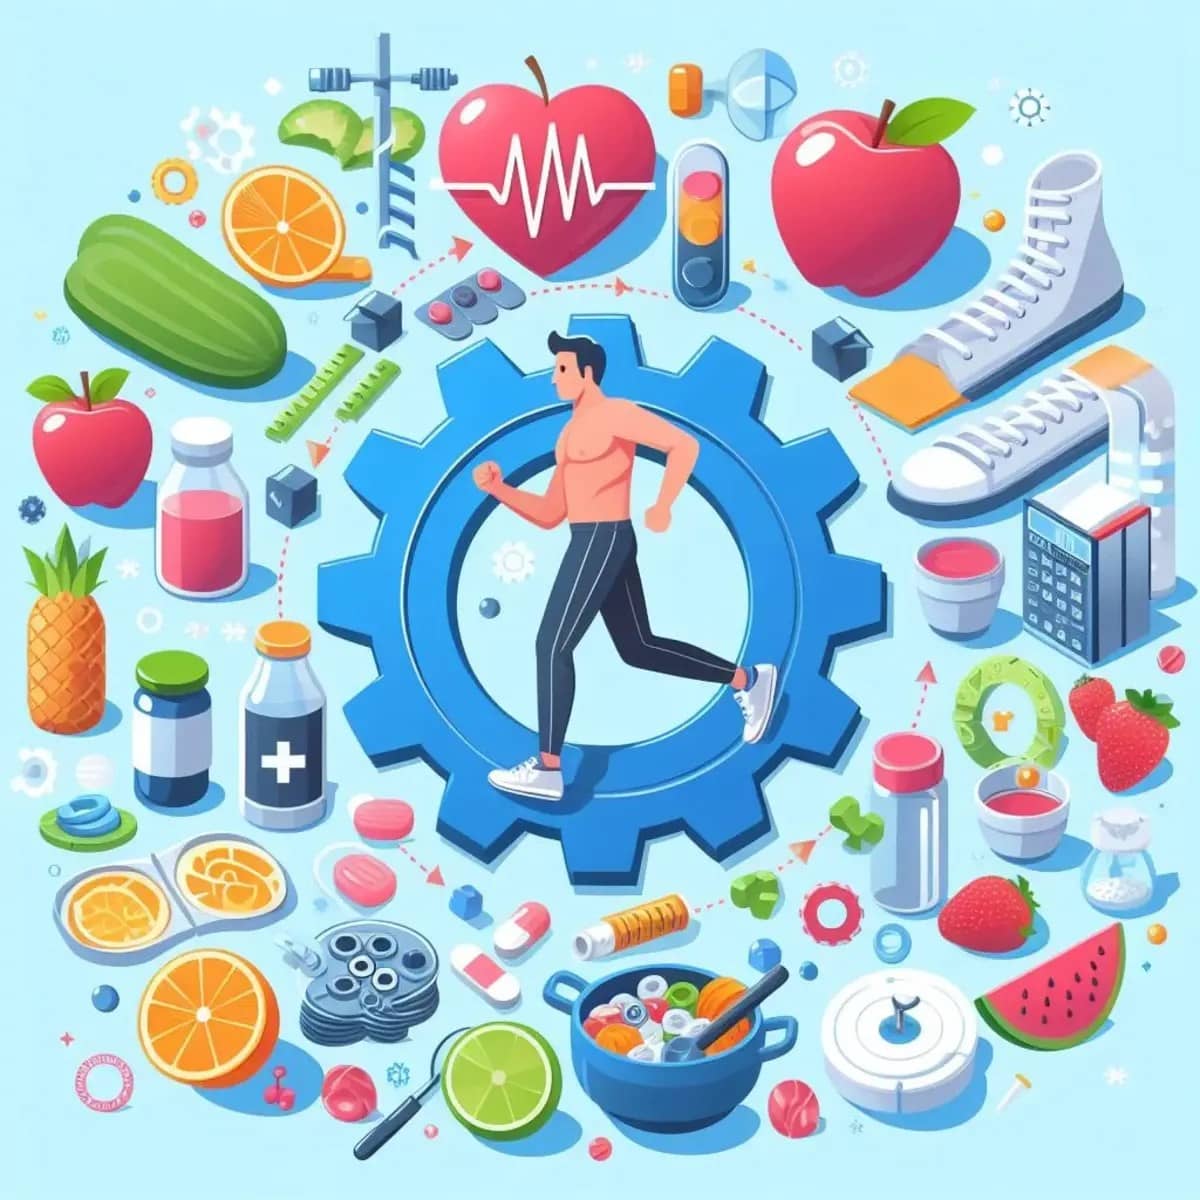 स्वास्थ्य और तंदुरुस्ती के टिप्स (Health and fitness tips) : एक स्वस्थ जीवन के लिए मार्गदर्शन